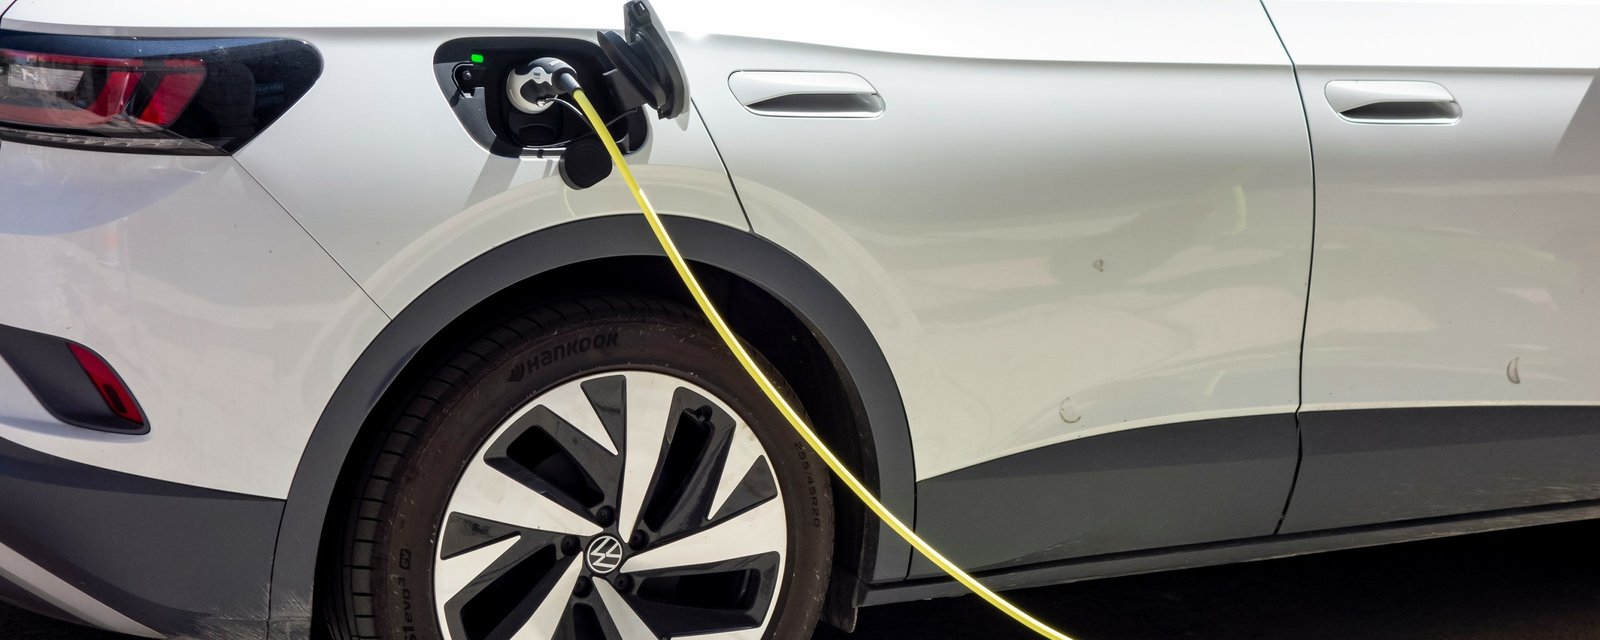 Ça va bientôt coûter plus cher pour les recharges de véhicules électriques